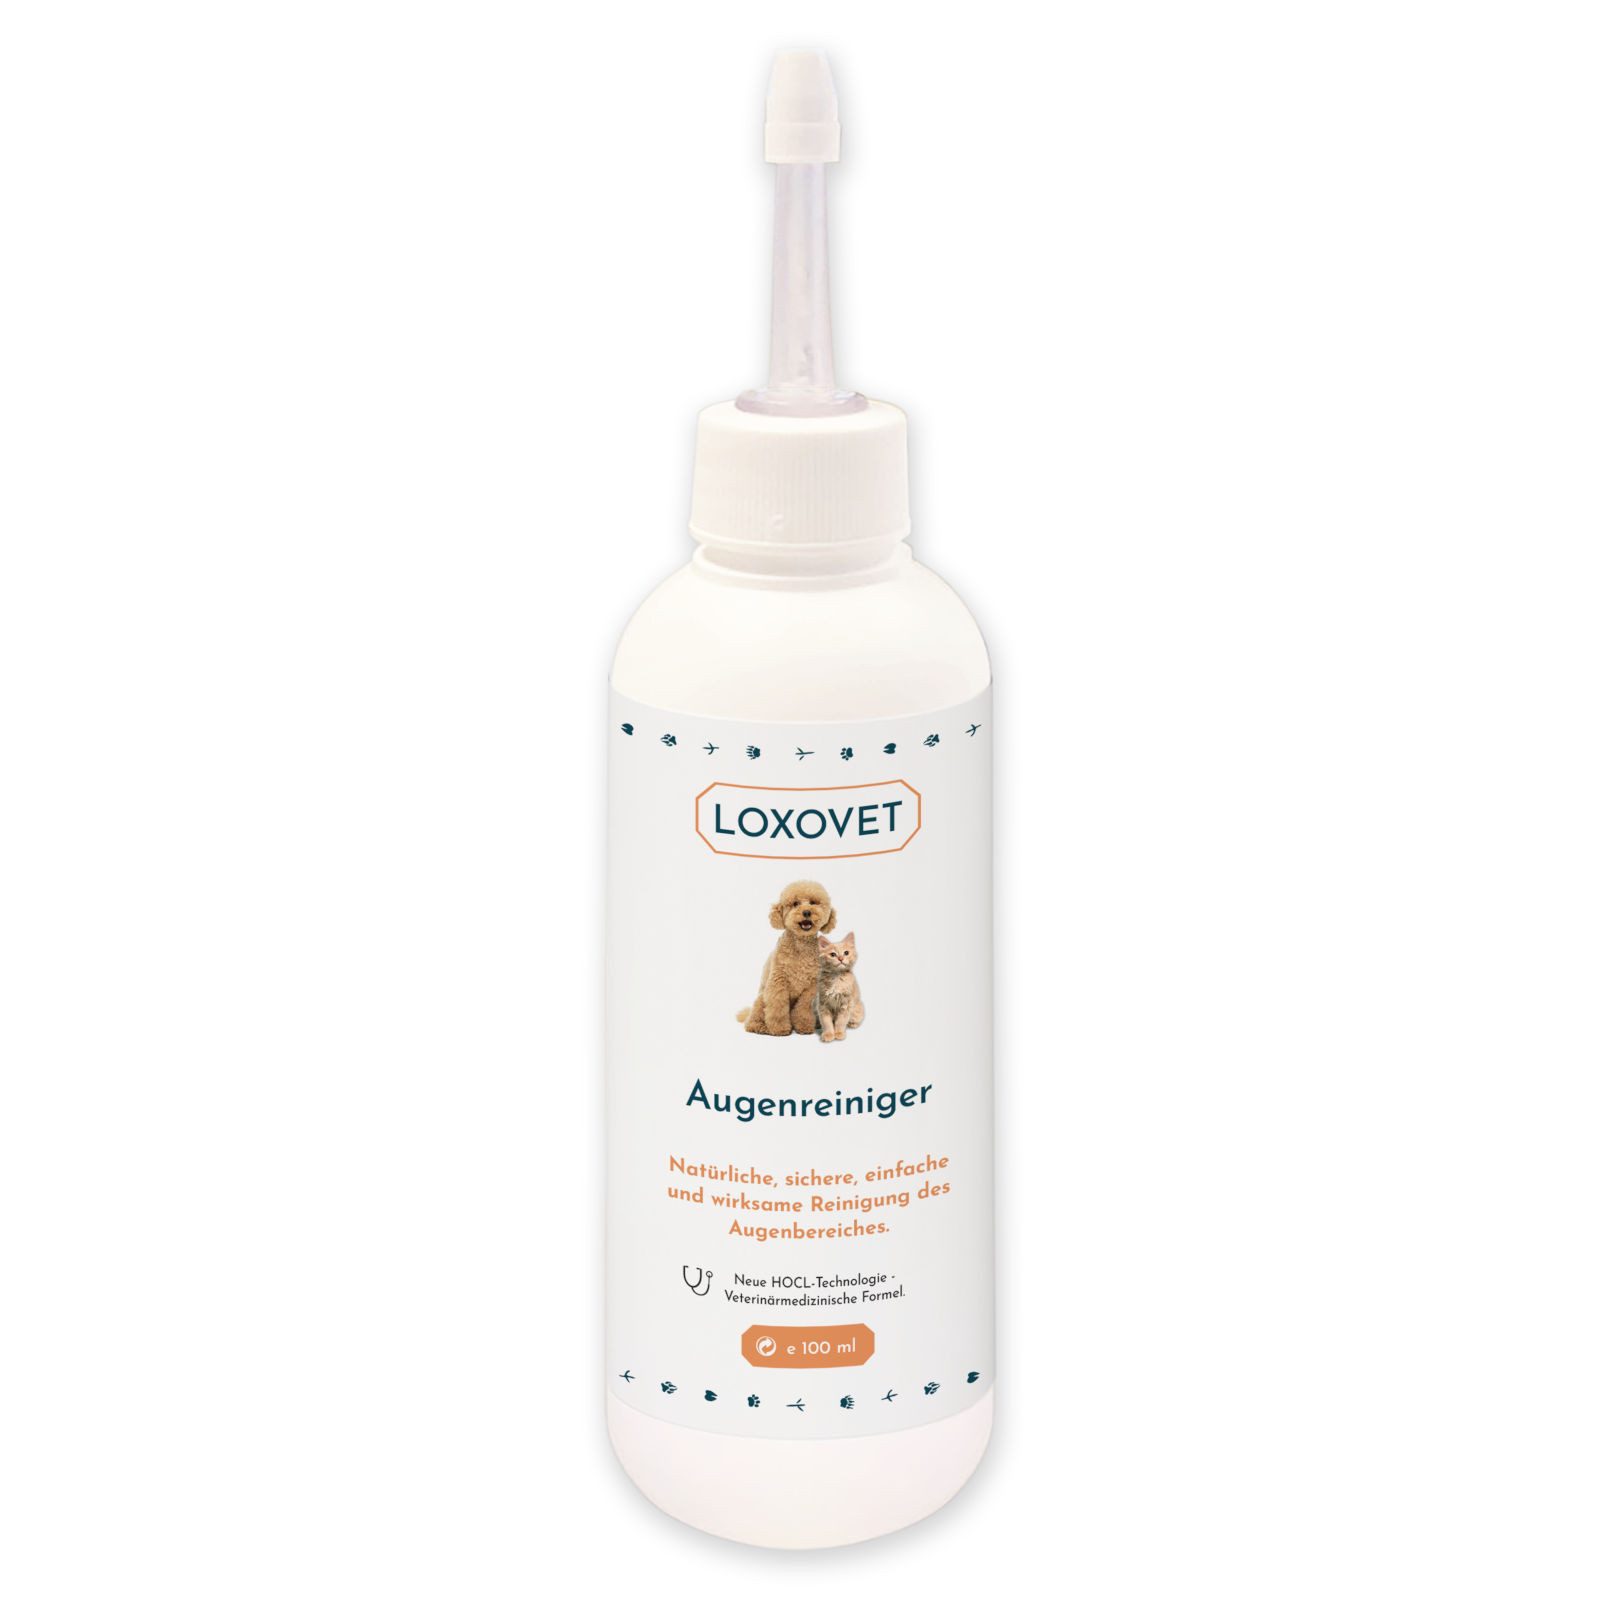 Loxovet Augenpflege-Set Augenreiniger 100 ml - für Hunde, Katzen und alle Haustiere